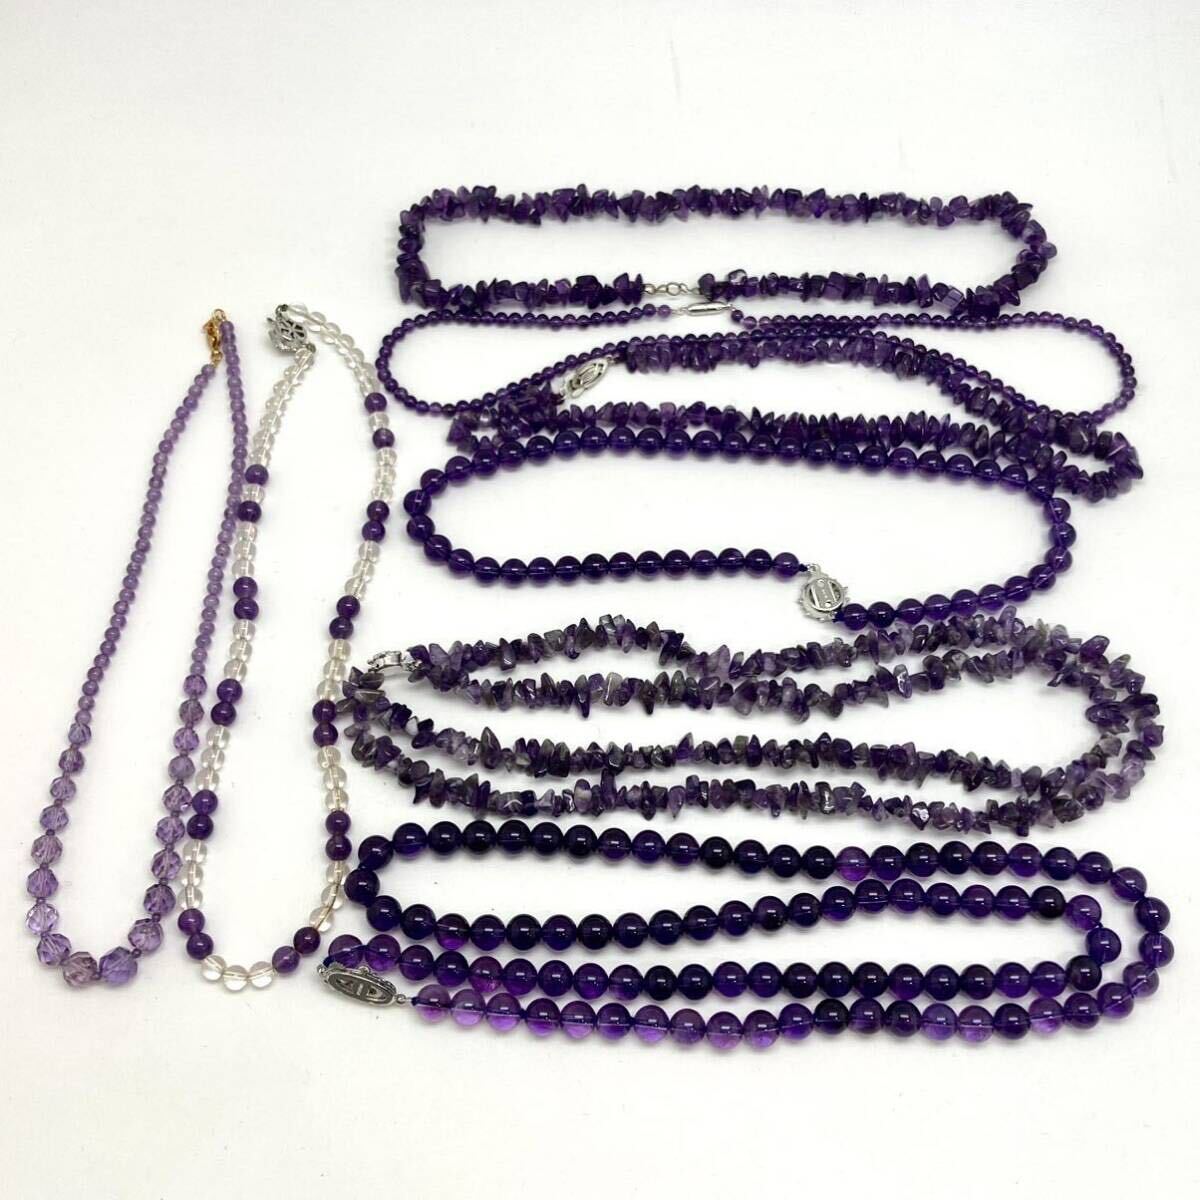 「アメシストネックレス8点おまとめ」a重量約338g アメジスト amethyst 紫水晶 necklace accessory jewelry ジュエリー silver CE0の画像2